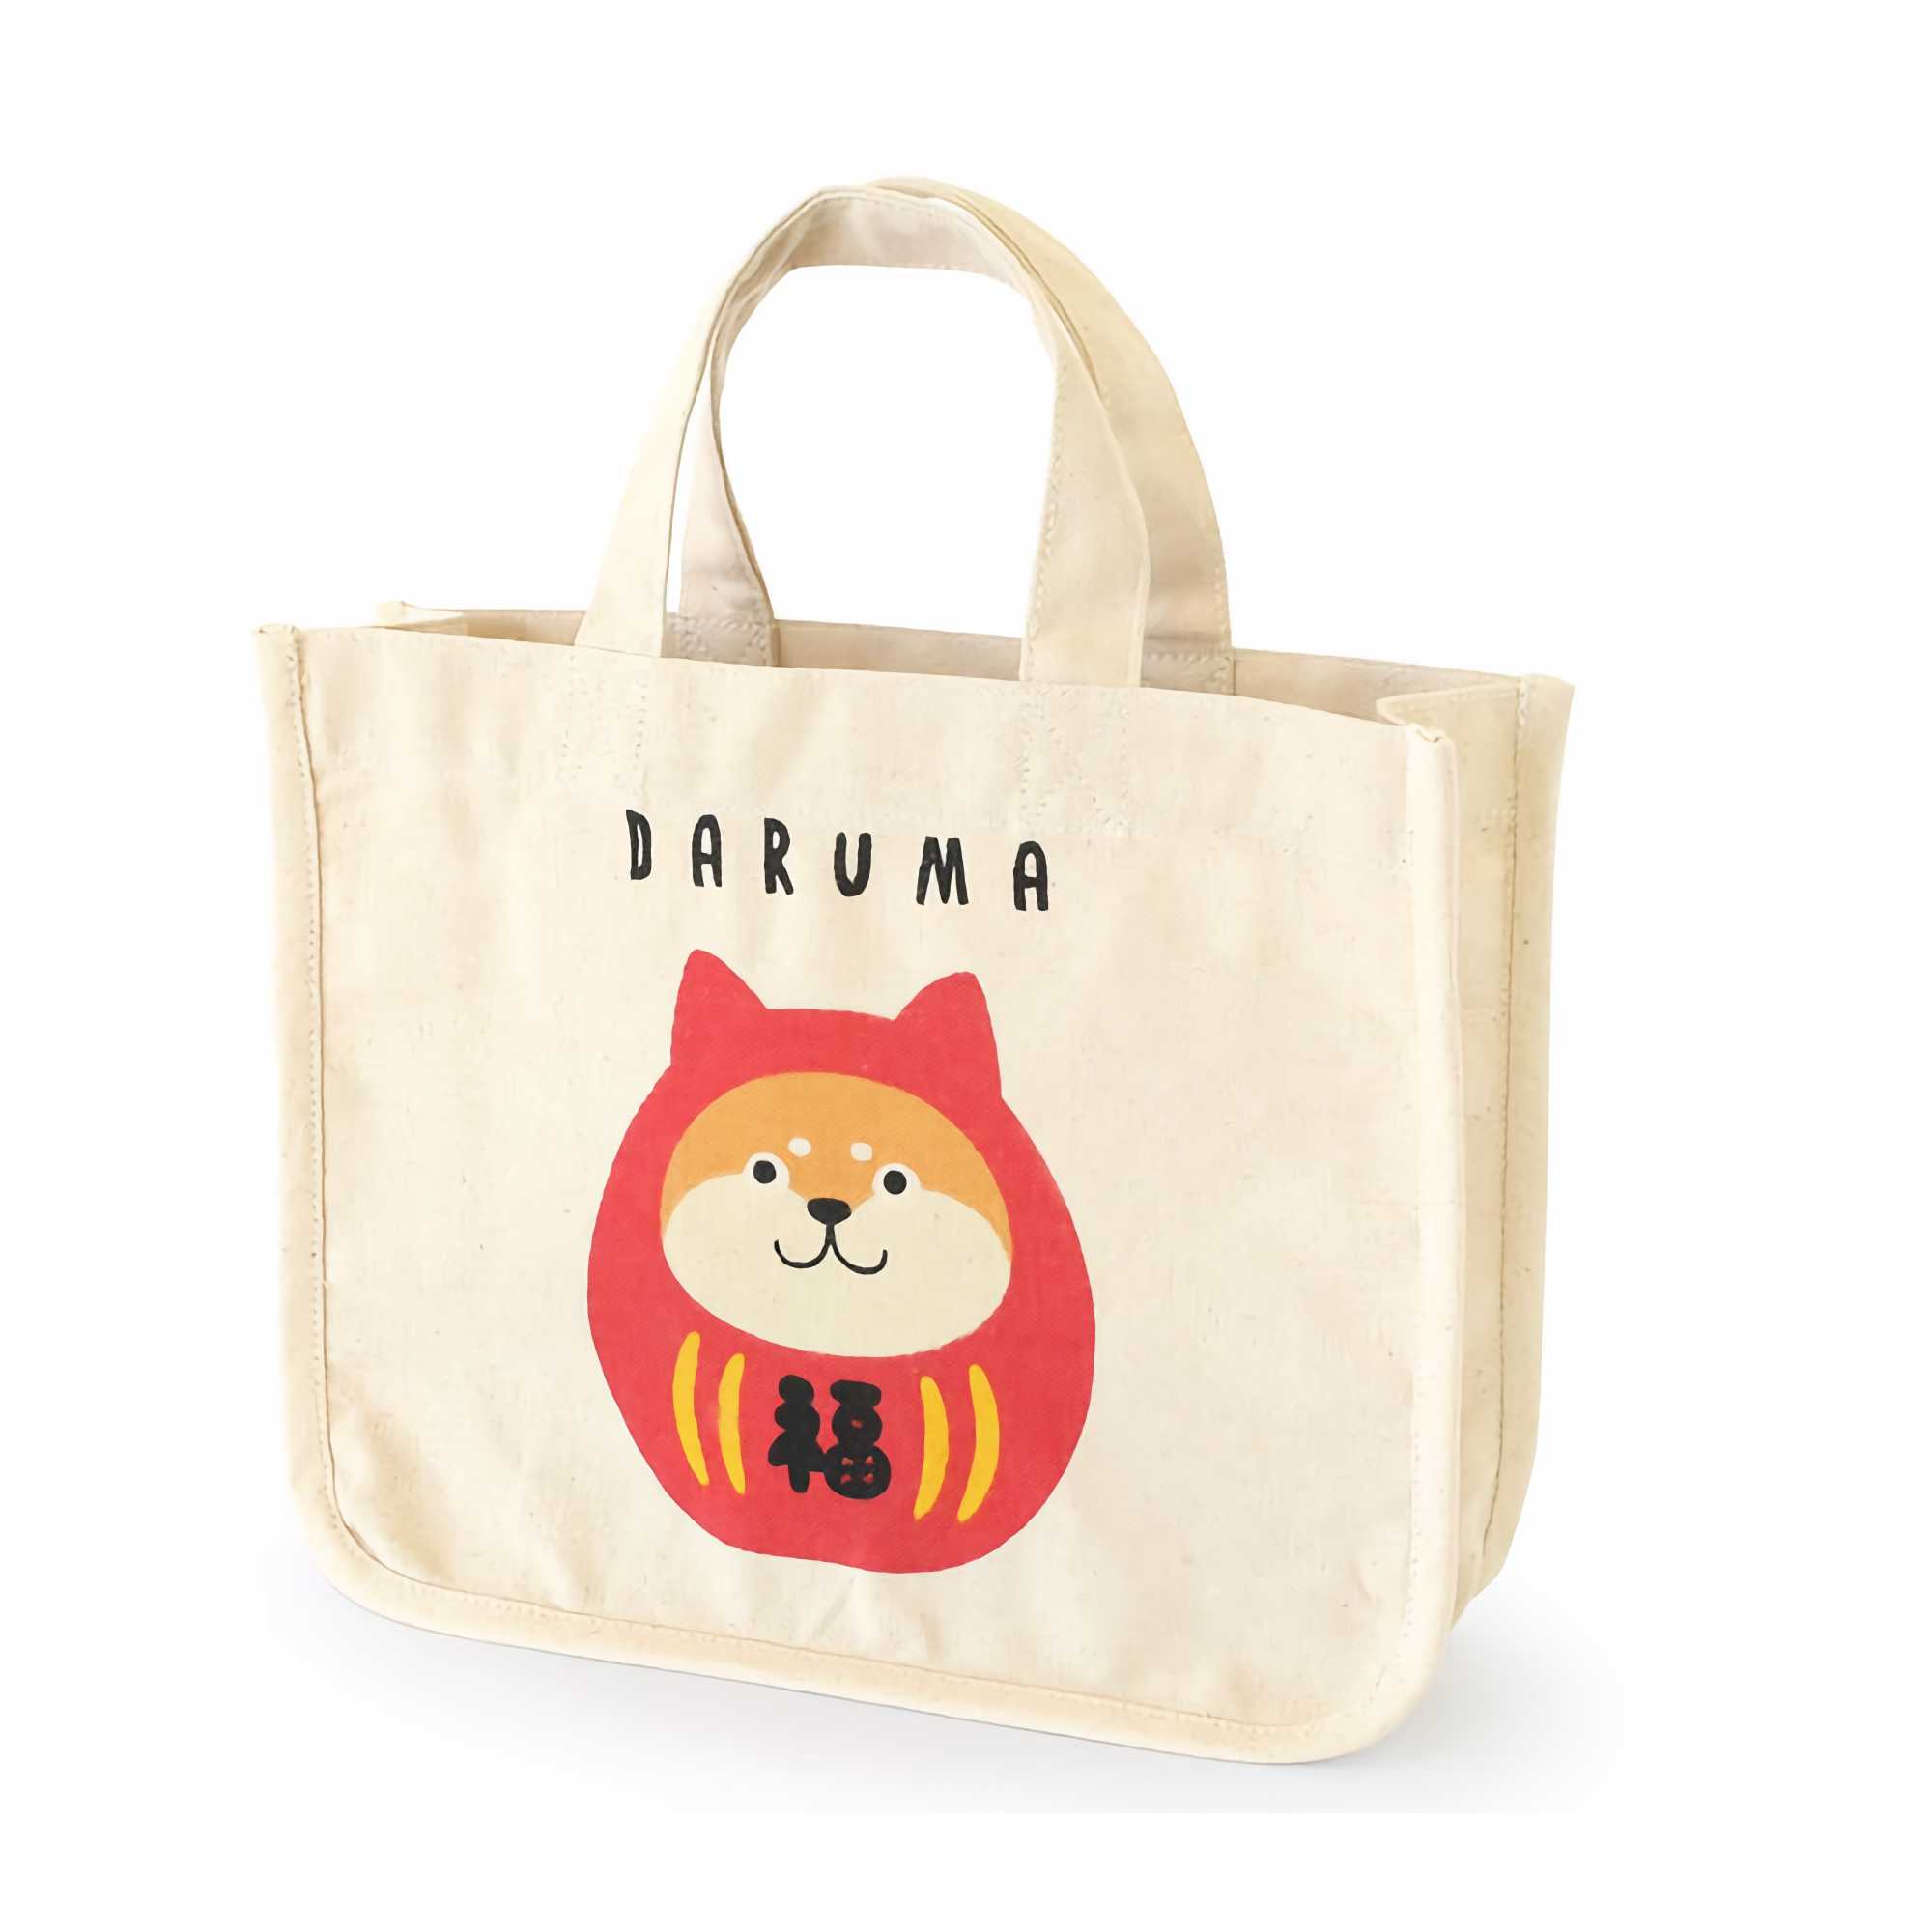 Daruma Animal Tote Bag